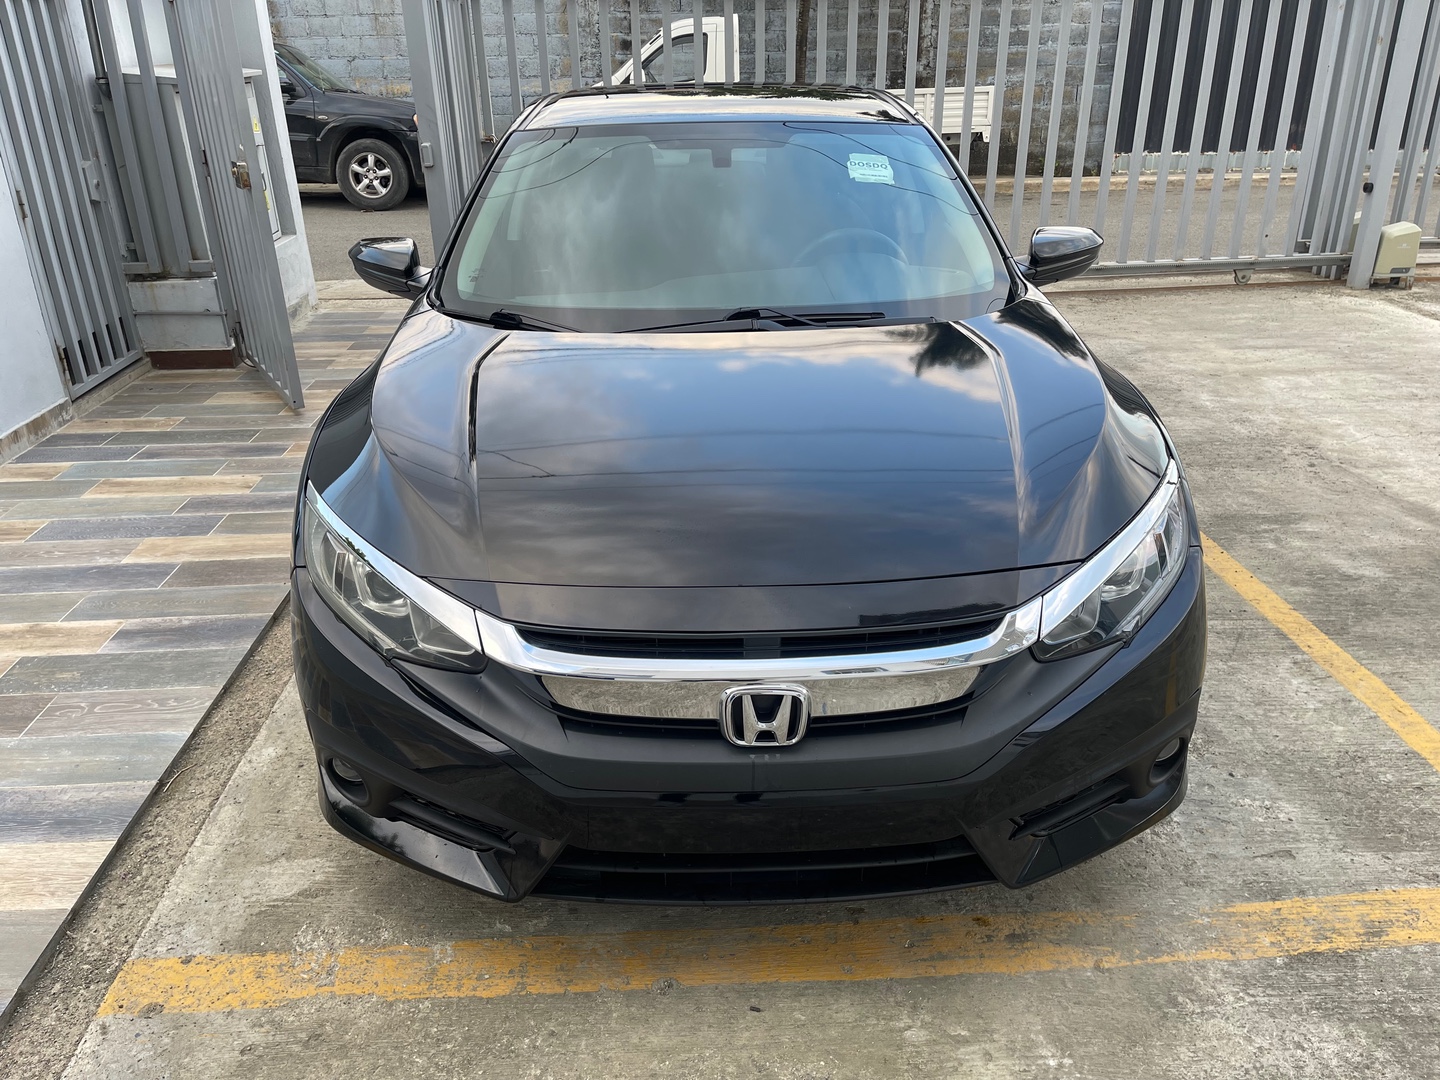 carros - Honda Civic 2018 LX 870,000 importado 38 mil millas en Santiago  5